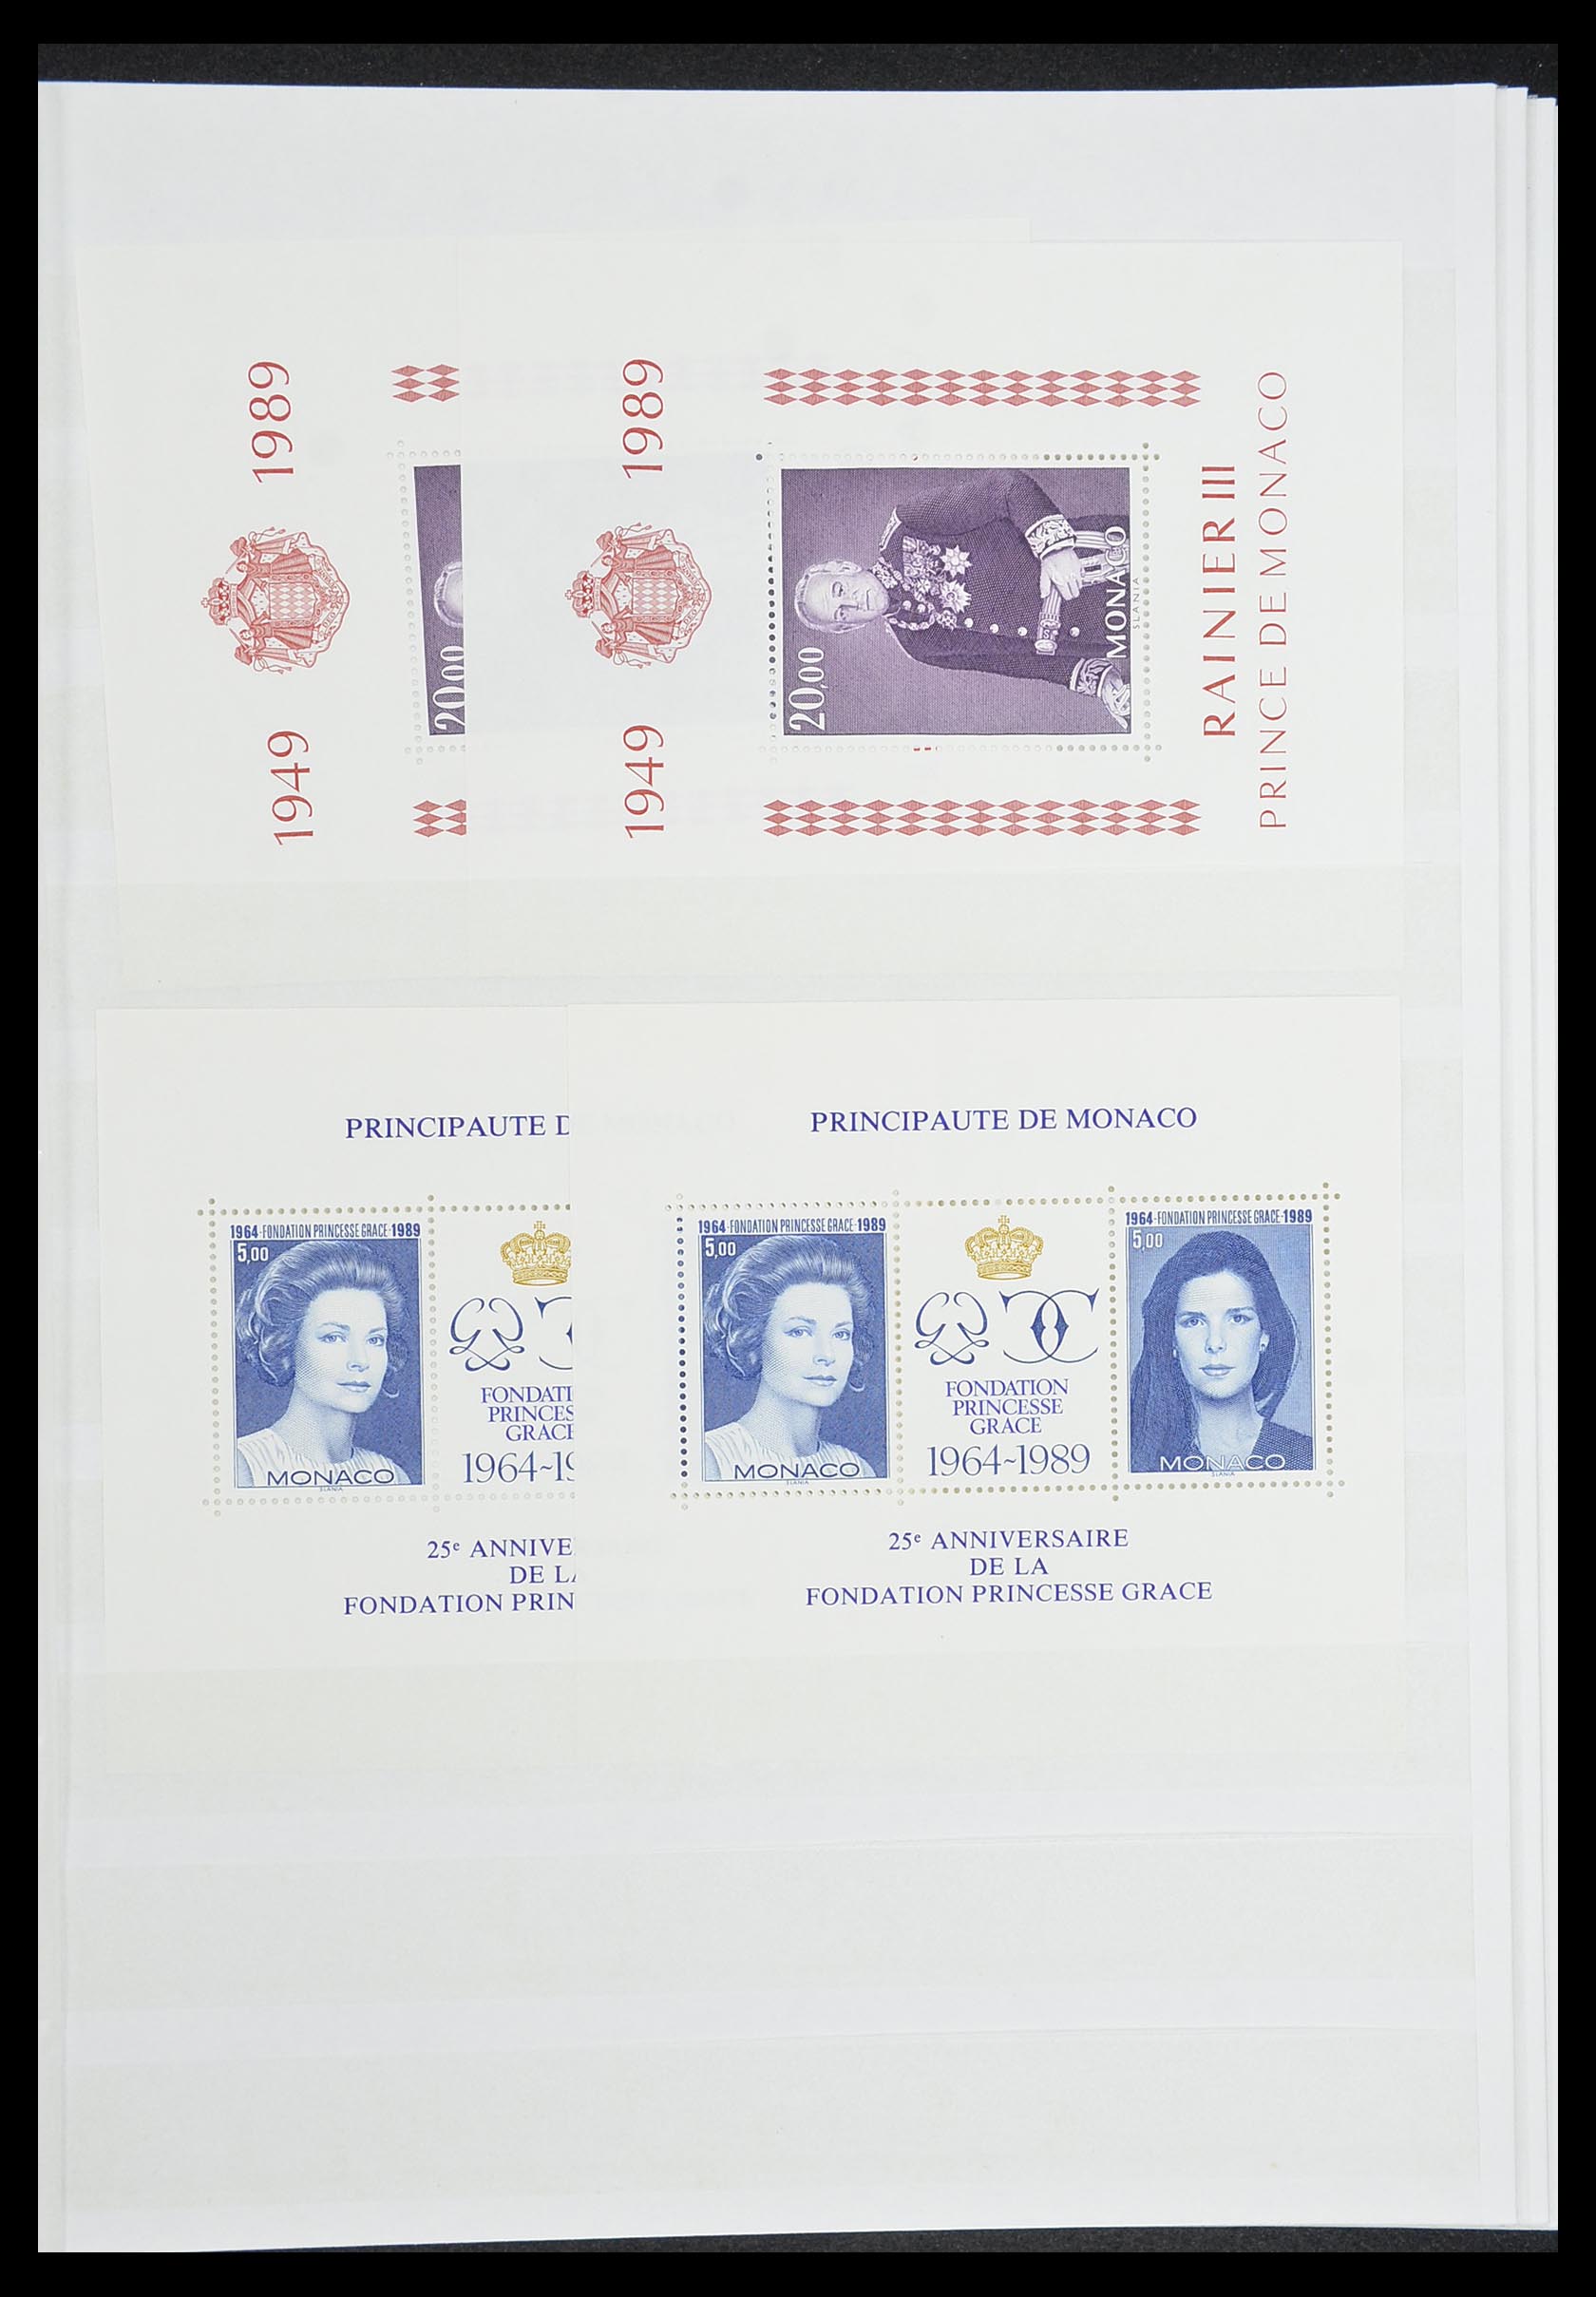 33833 011 - Stamp collection 33833 Monaco souvenir sheets 1979-2015.